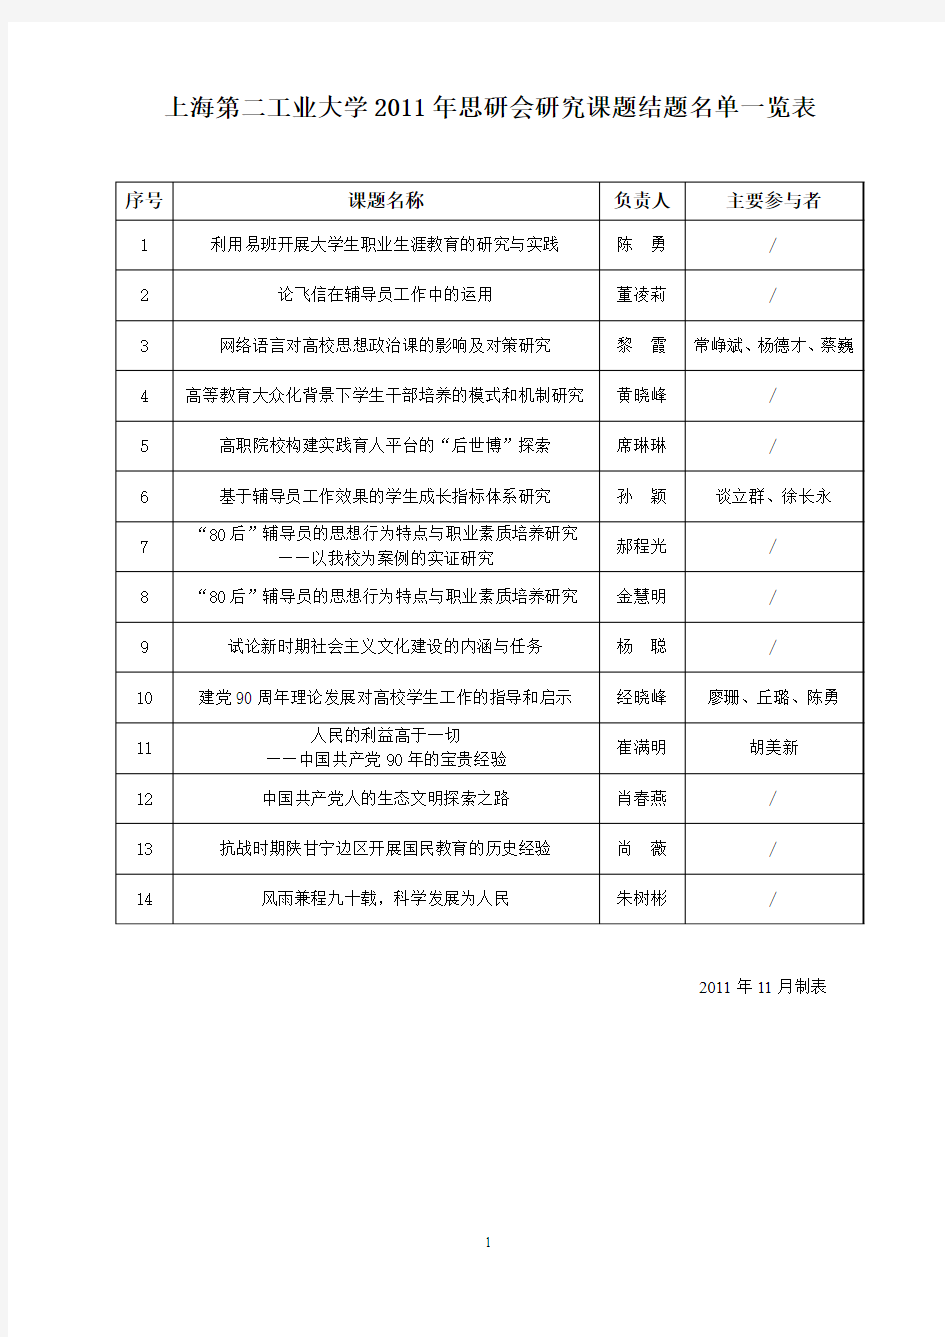 上海第二工业大学2011年思研会研究课题结题名单一览表